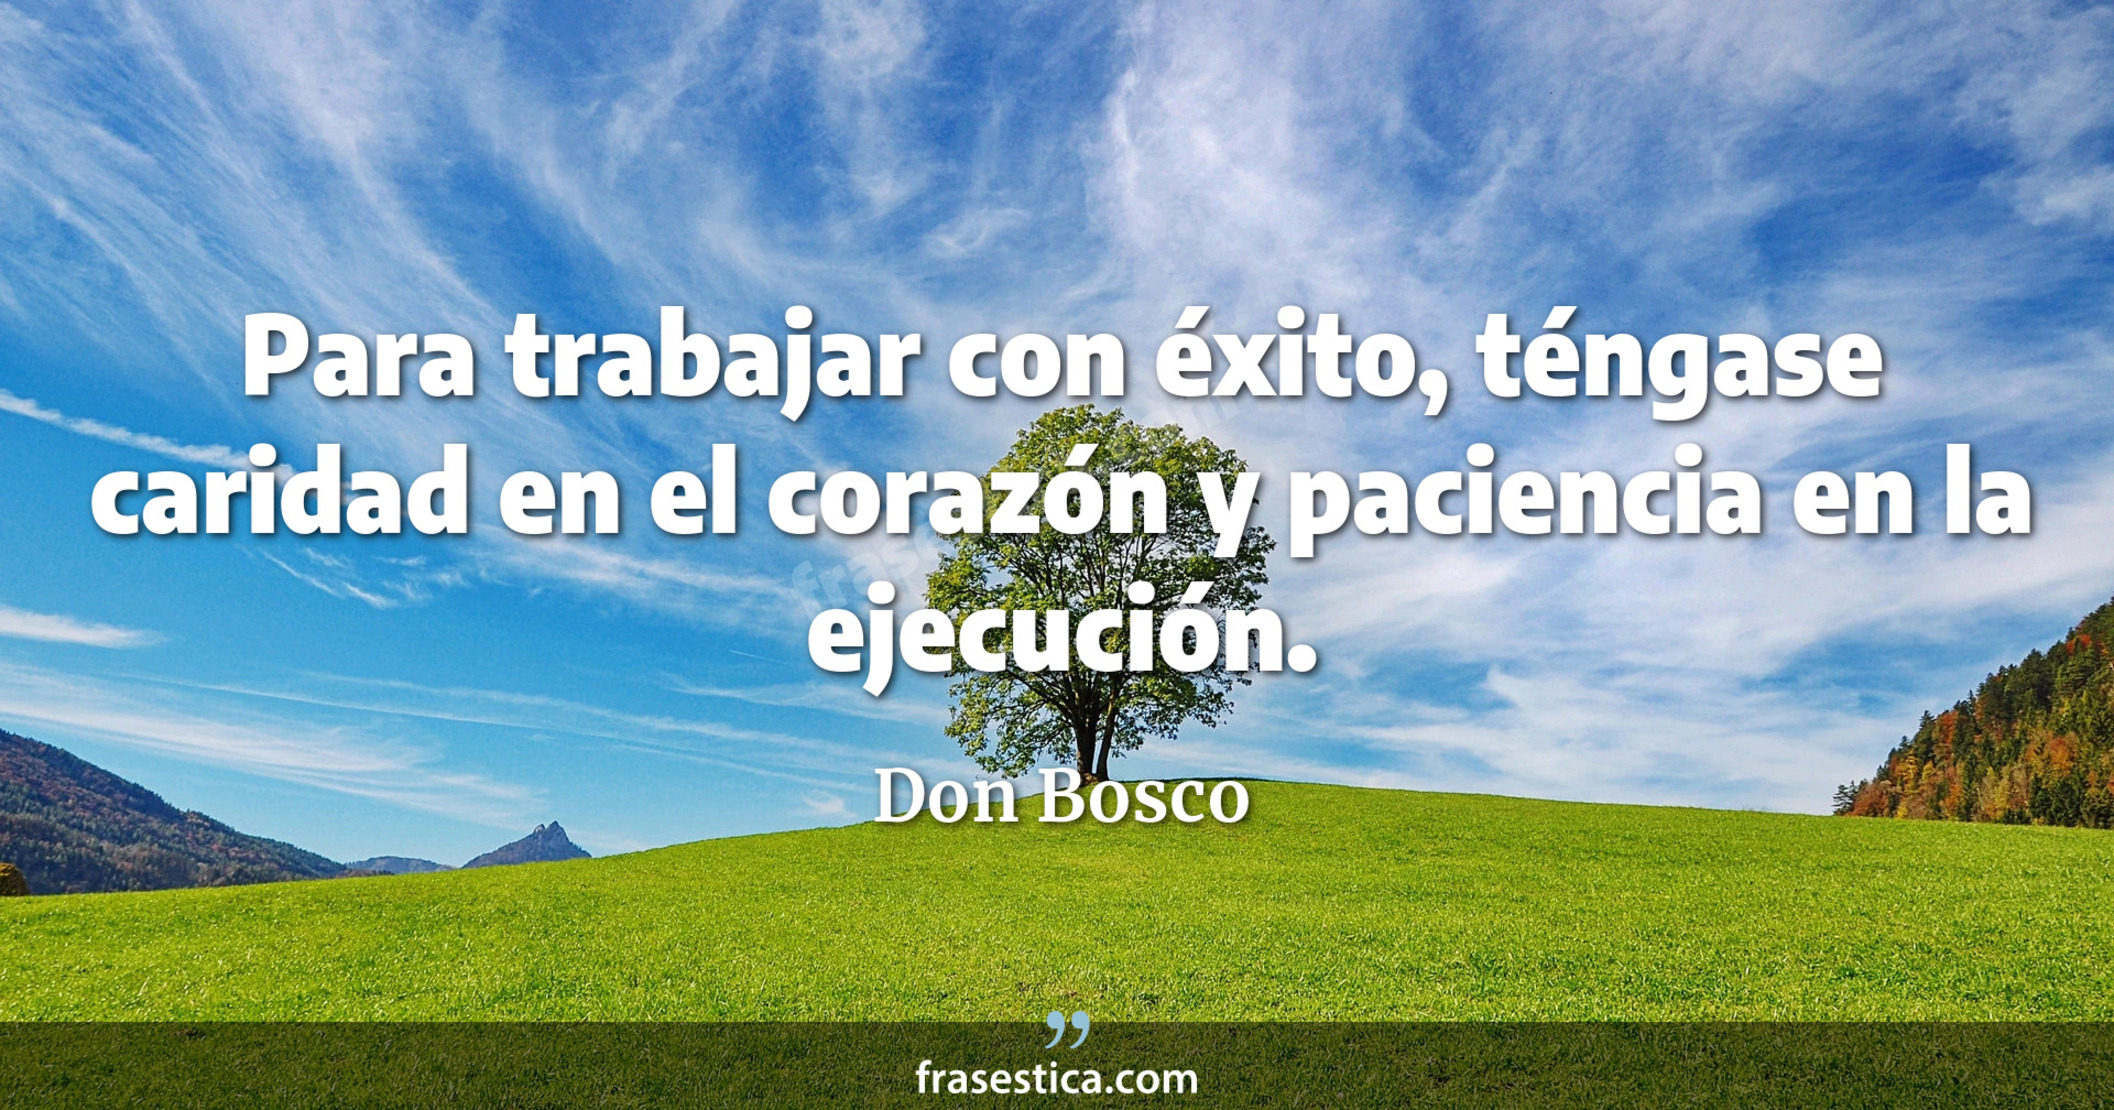 Para trabajar con éxito, téngase caridad en el corazón y paciencia en la ejecución. - Don Bosco